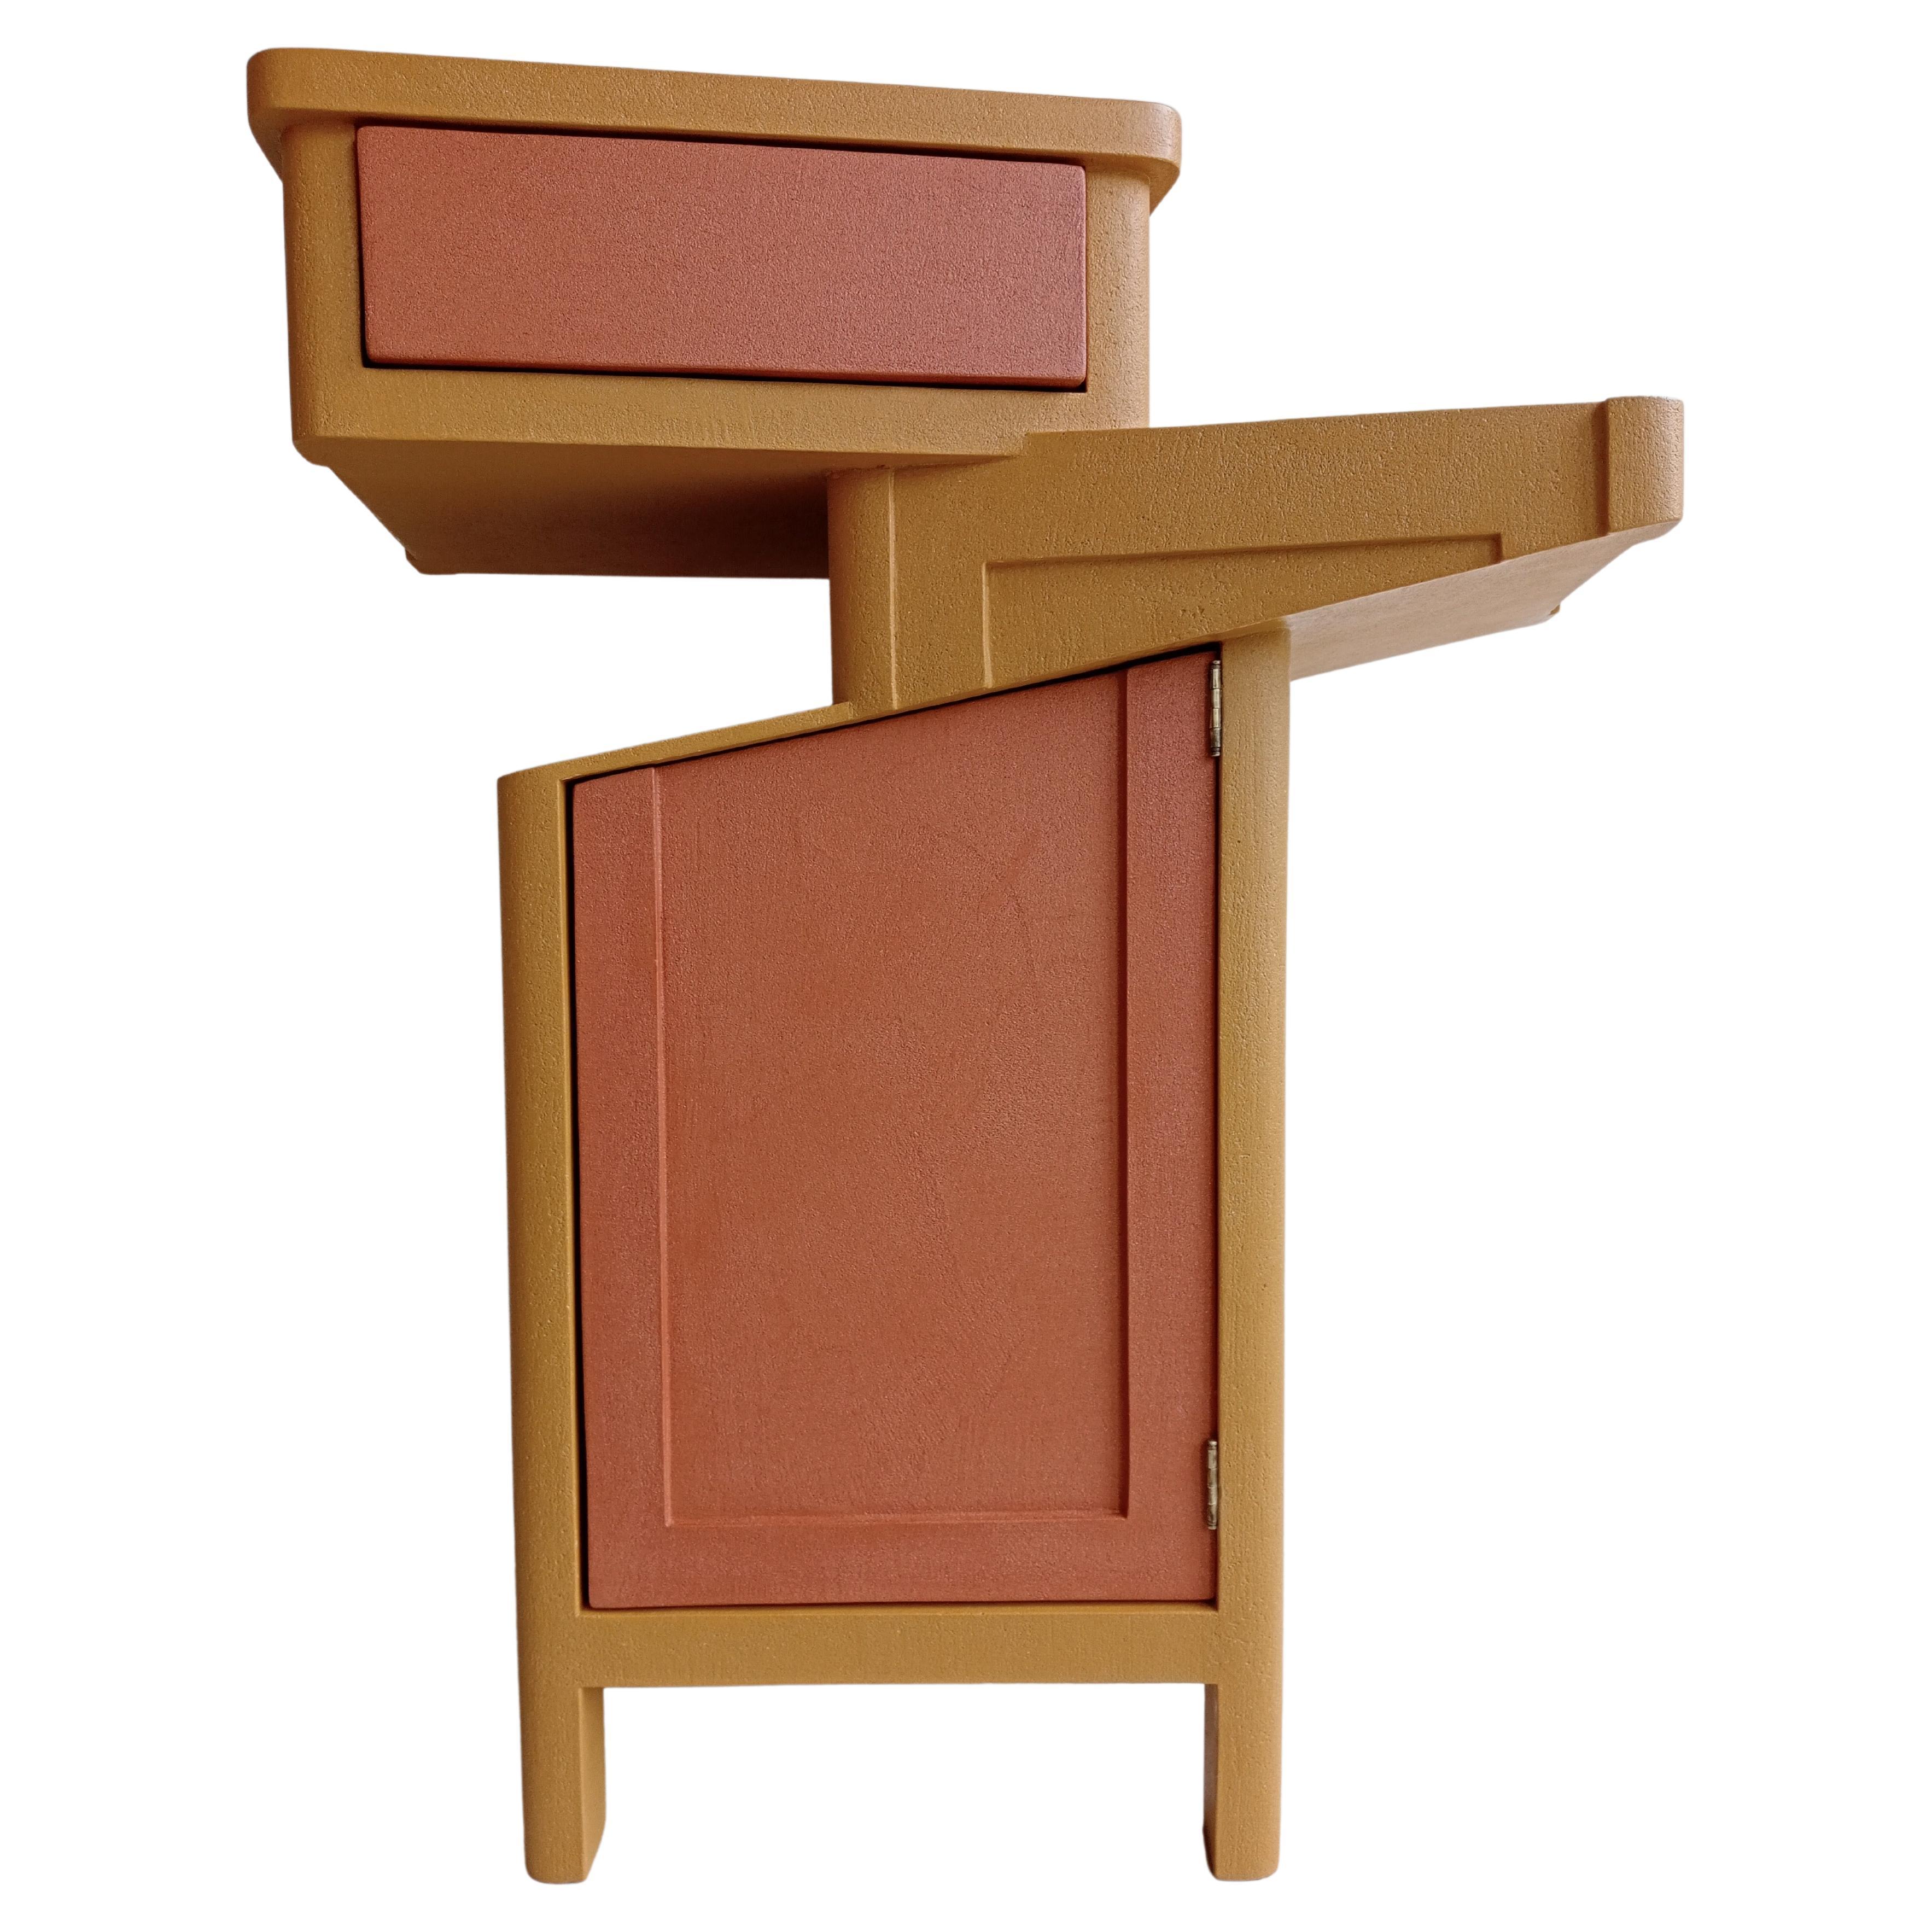 Sculpture de cabinet Design/One Contemporary en Wood et Résine colorée